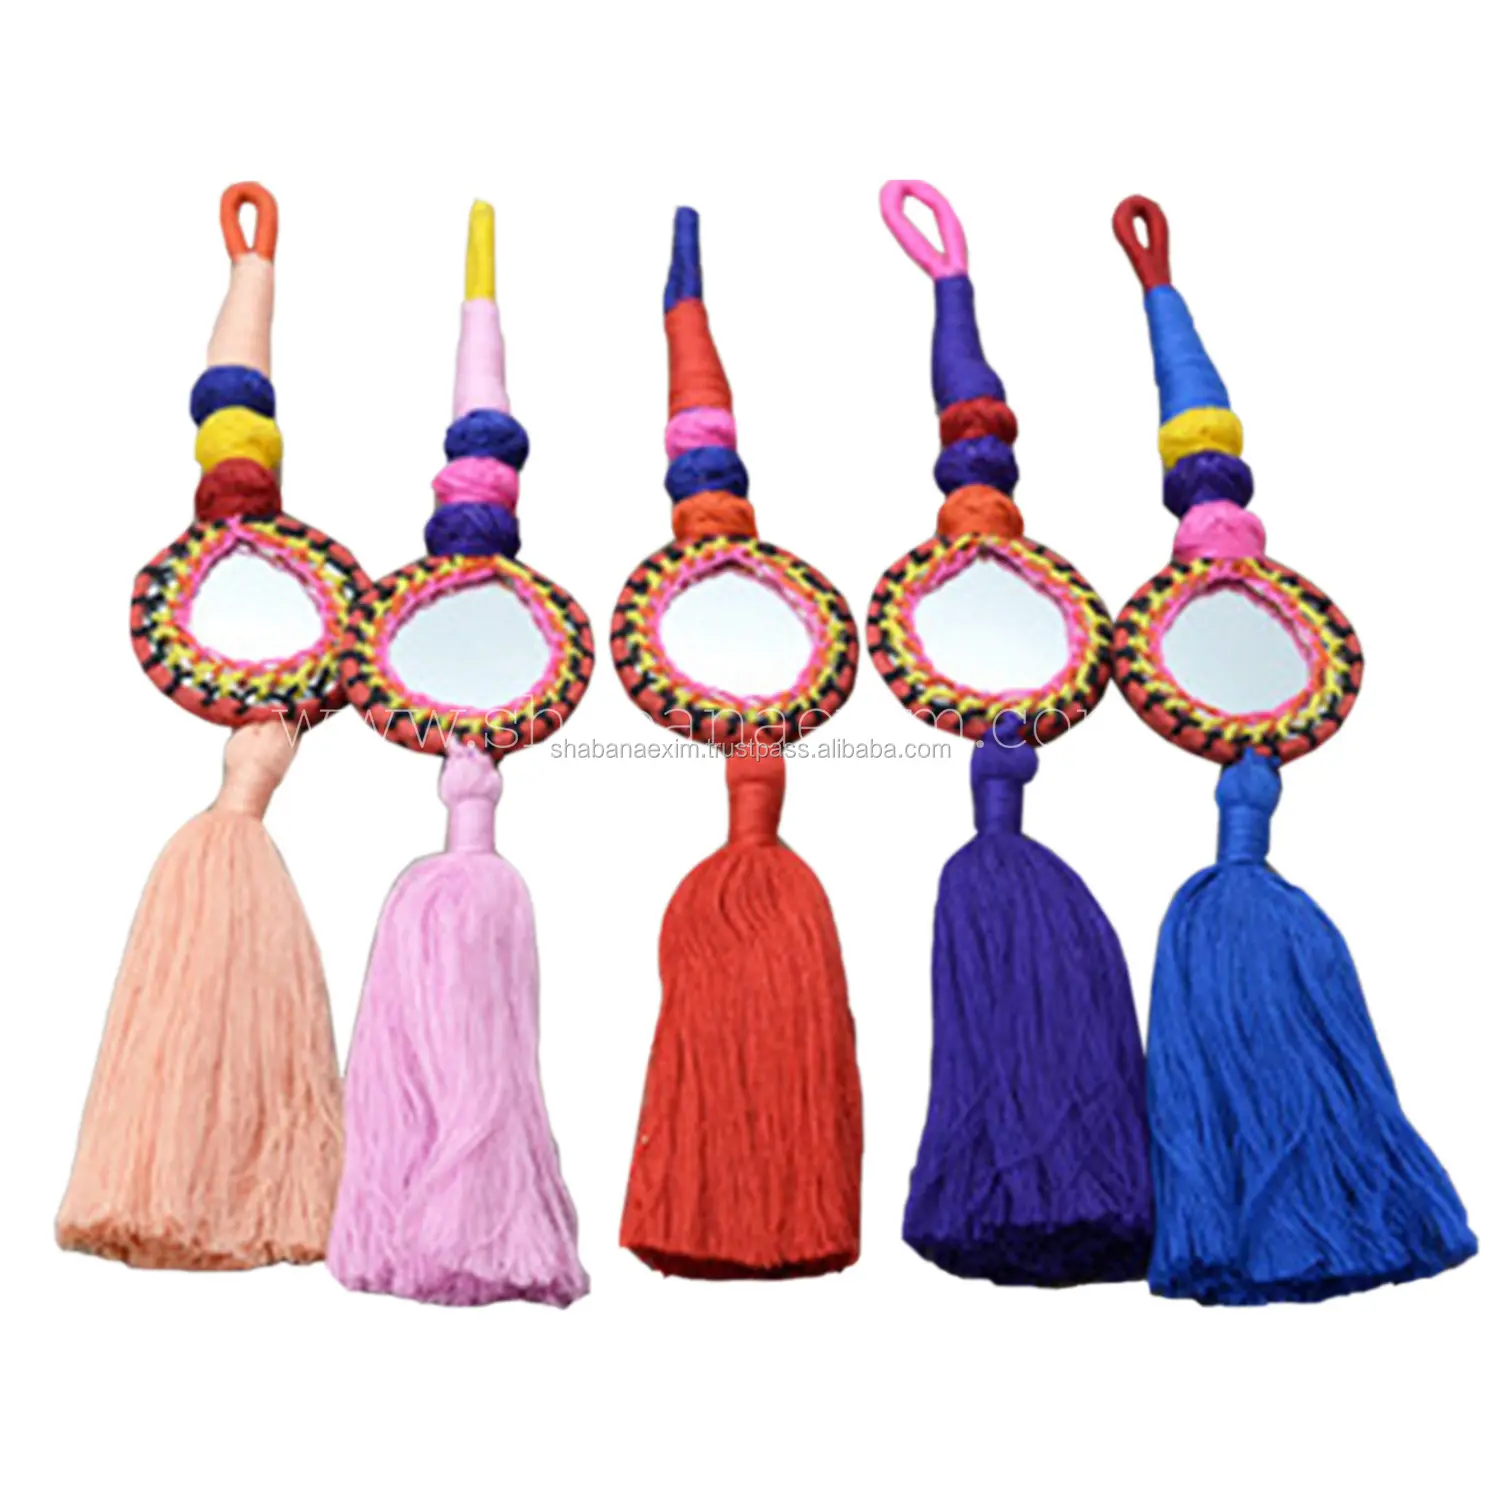 Garniture de gland de couture décorative colorée à la main gland tissu gland frange dans; 10122740 couleur personnalisée PT-107A 200 pièces